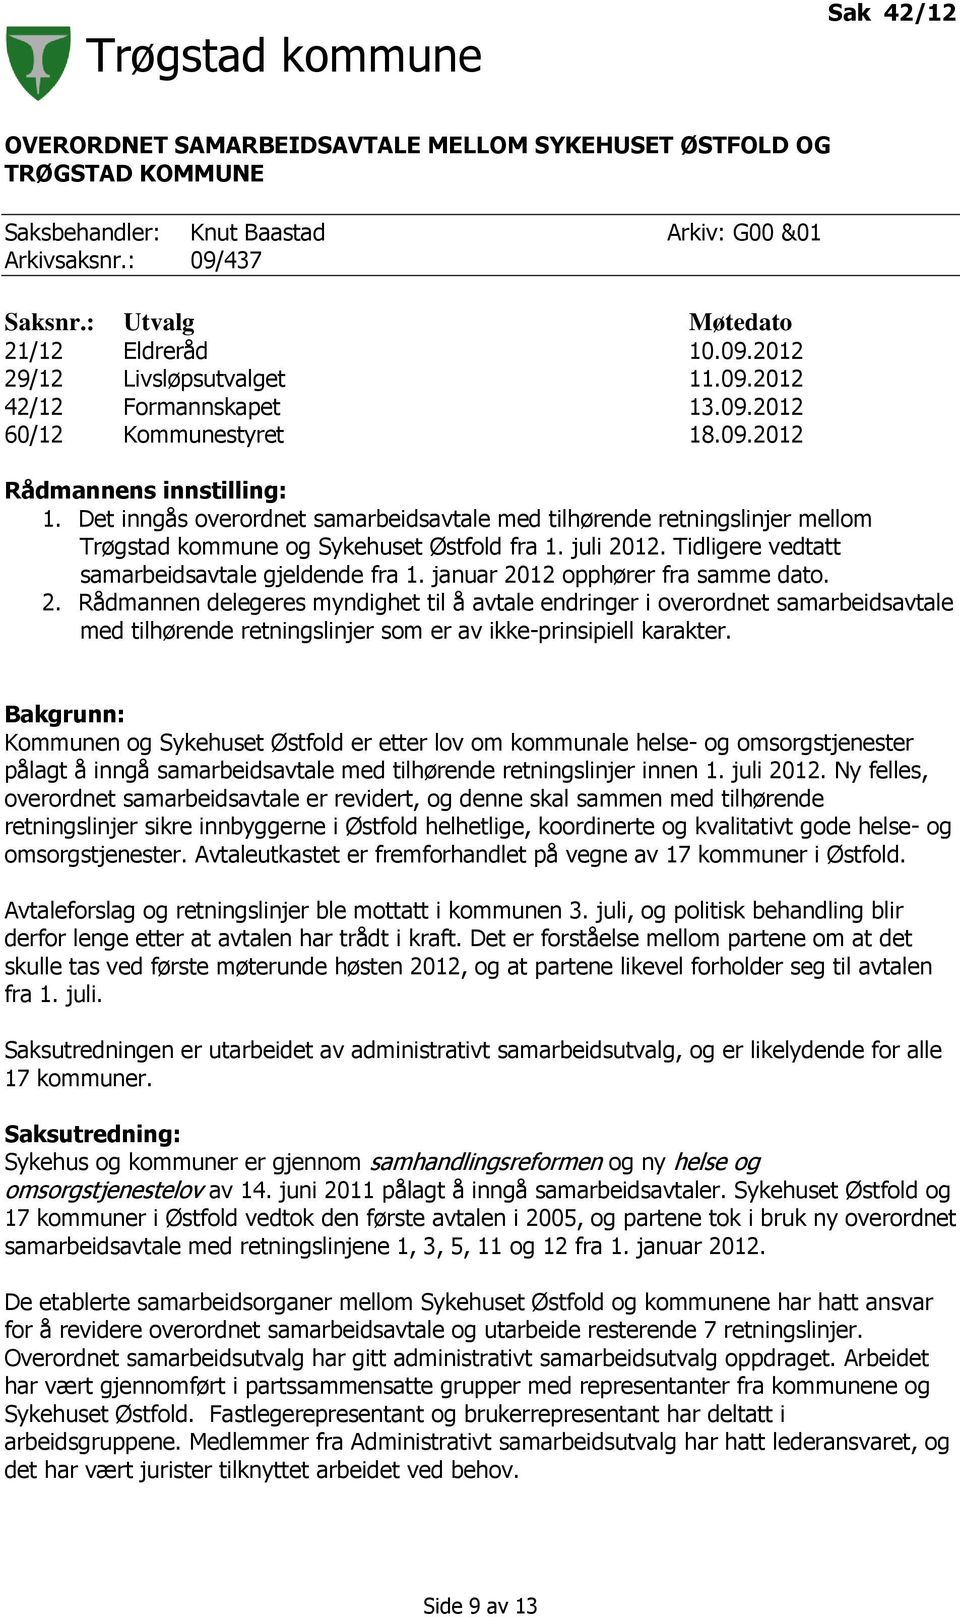 Det inngås overordnet samarbeidsavtale med tilhørende retningslinjer mellom Trøgstad kommune og Sykehuset Østfold fra 1. juli 2012. Tidligere vedtatt samarbeidsavtale gjeldende fra 1.